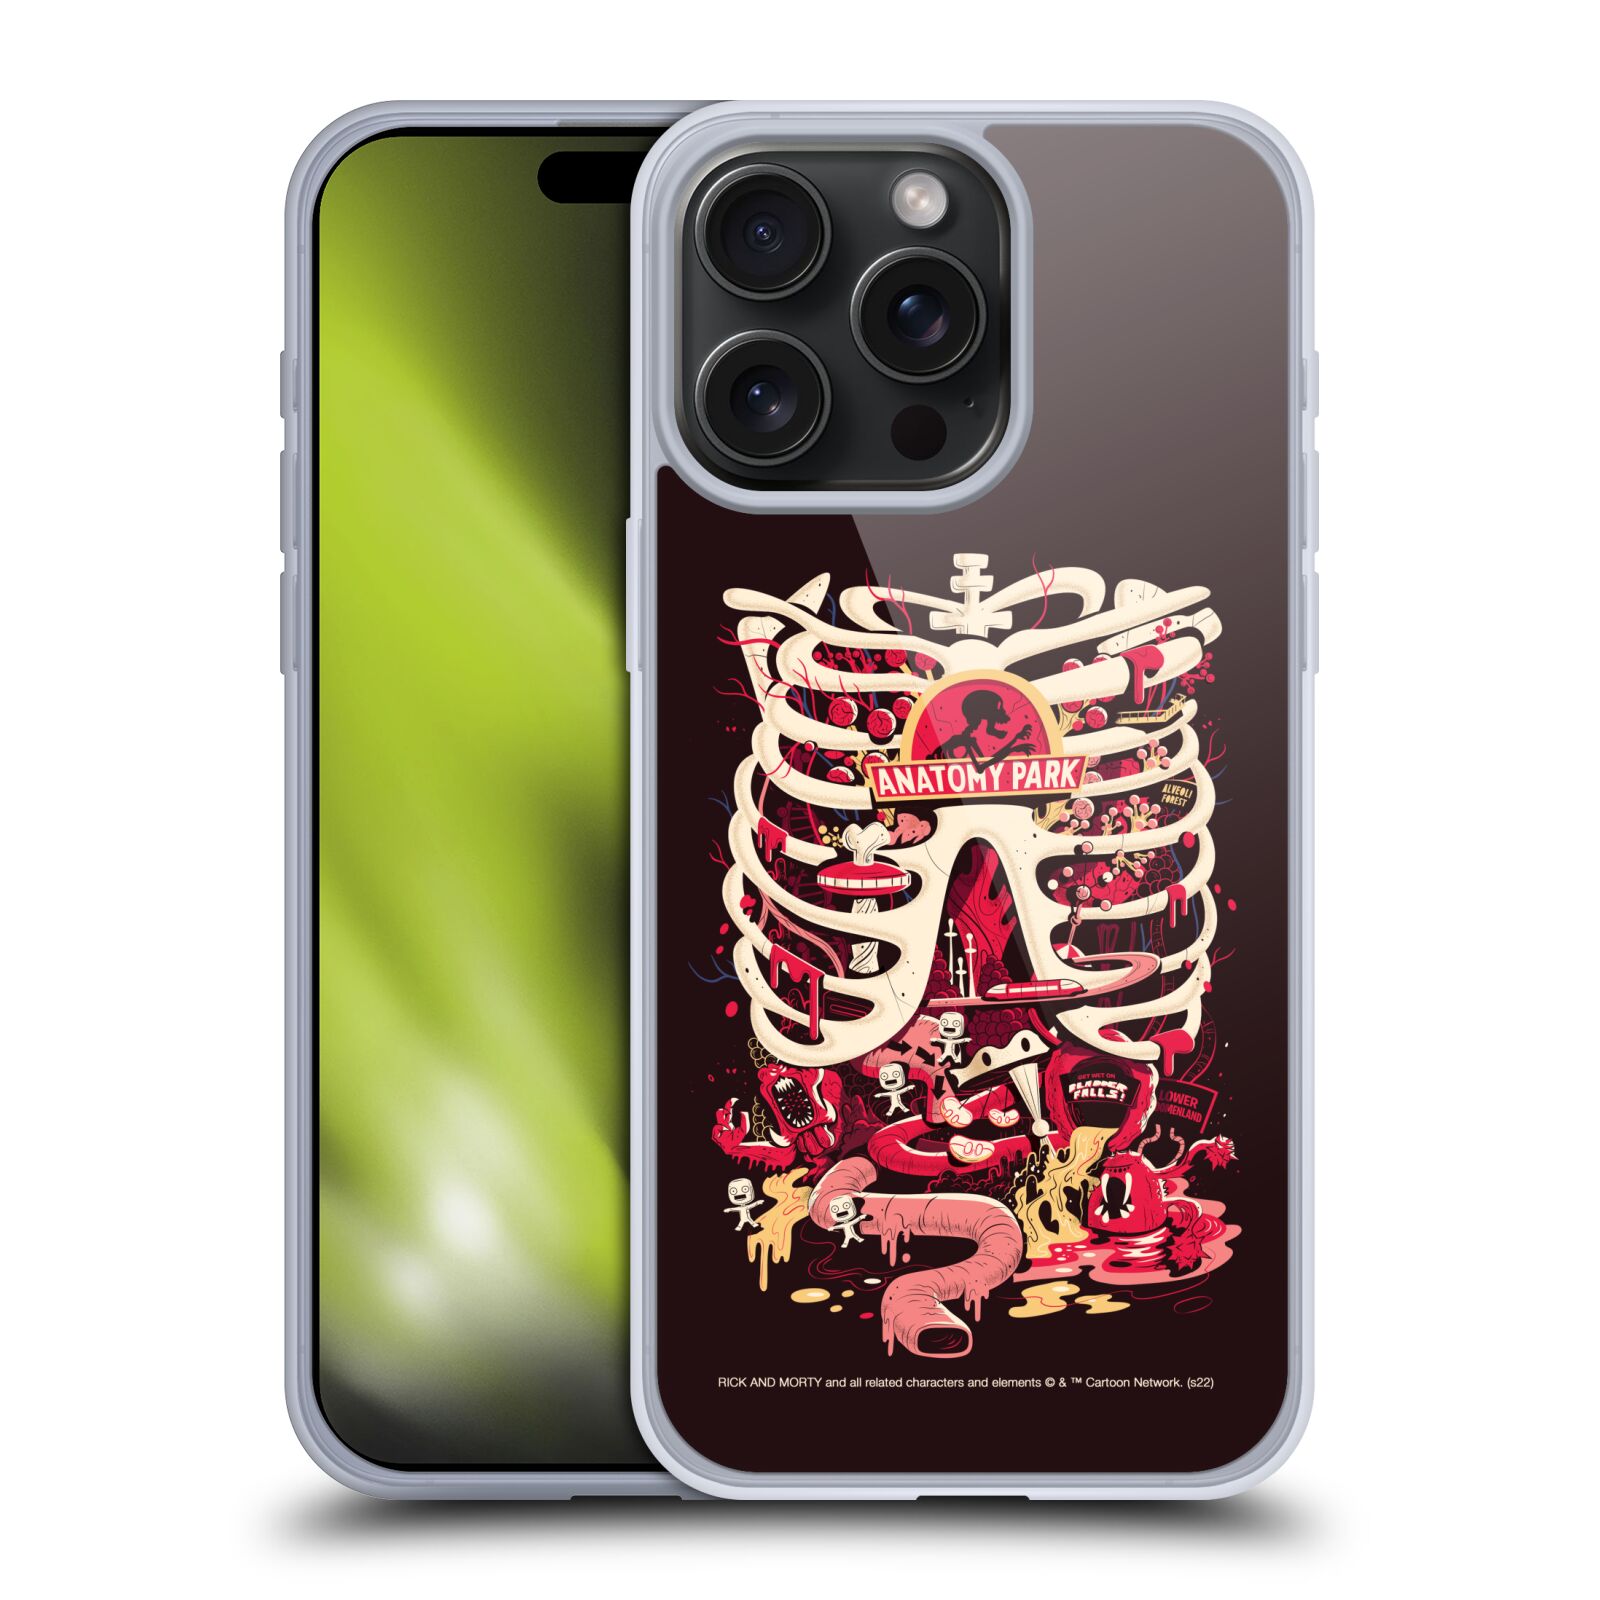 Silikonové lesklé pouzdro na mobil Apple iPhone 15 Pro Max - Rick And Morty - Anatomy Park (Silikonový lesklý kryt, obal, pouzdro na mobilní telefon Apple iPhone 15 Pro Max s licencovaným motivem Rick And Morty - Anatomy Park)